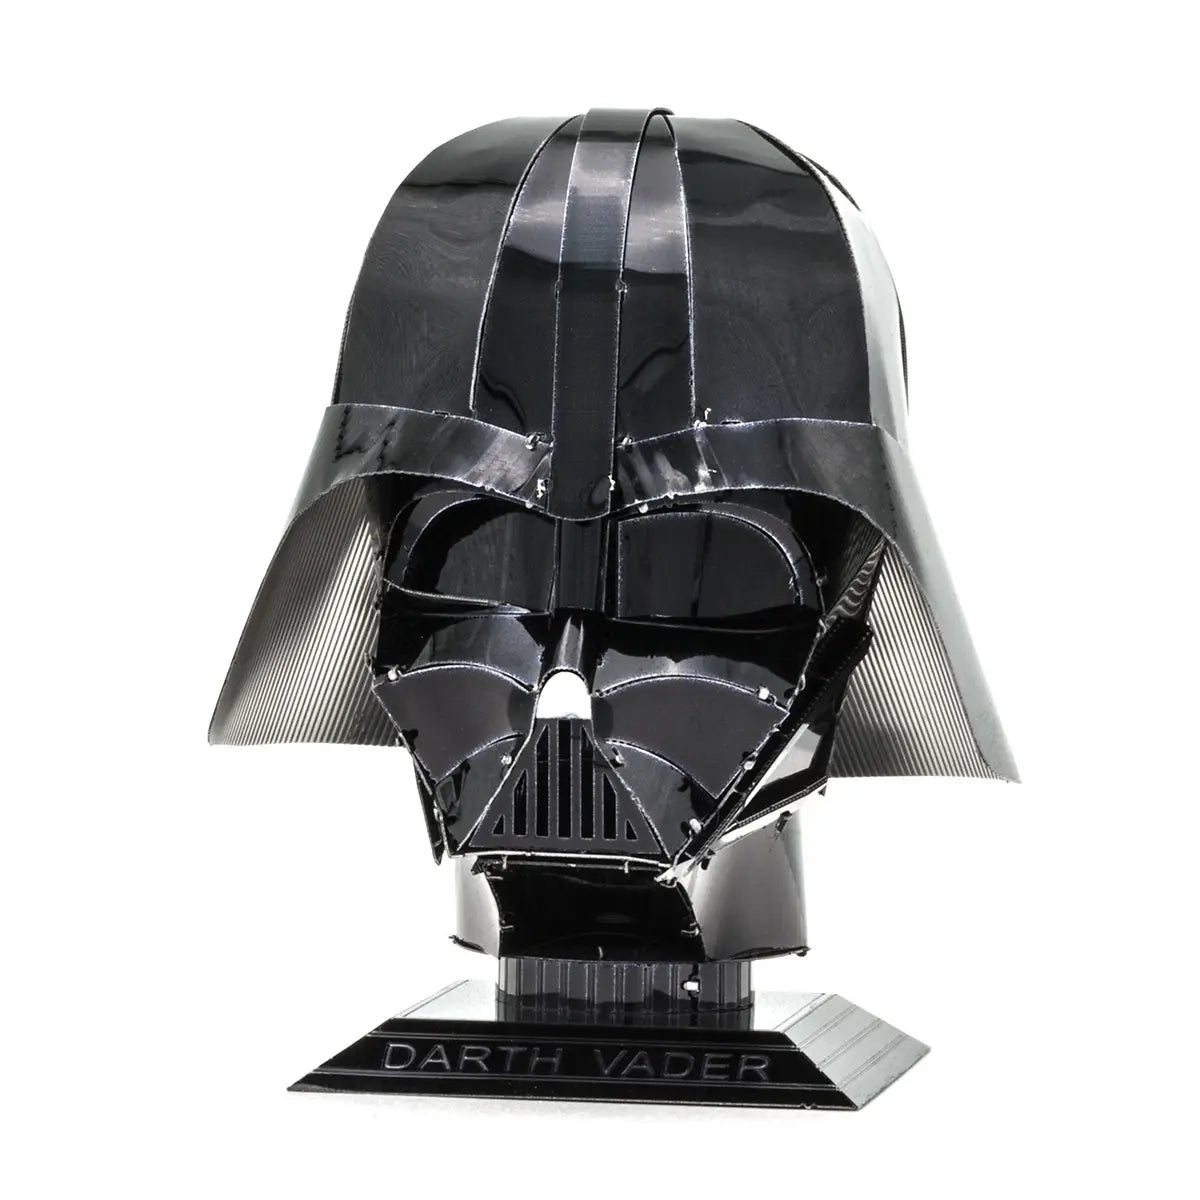 Star Wars Official 3D Metal Model Kit: 3in High Detail Darth Vader Helmet Built and Displayed Front Side